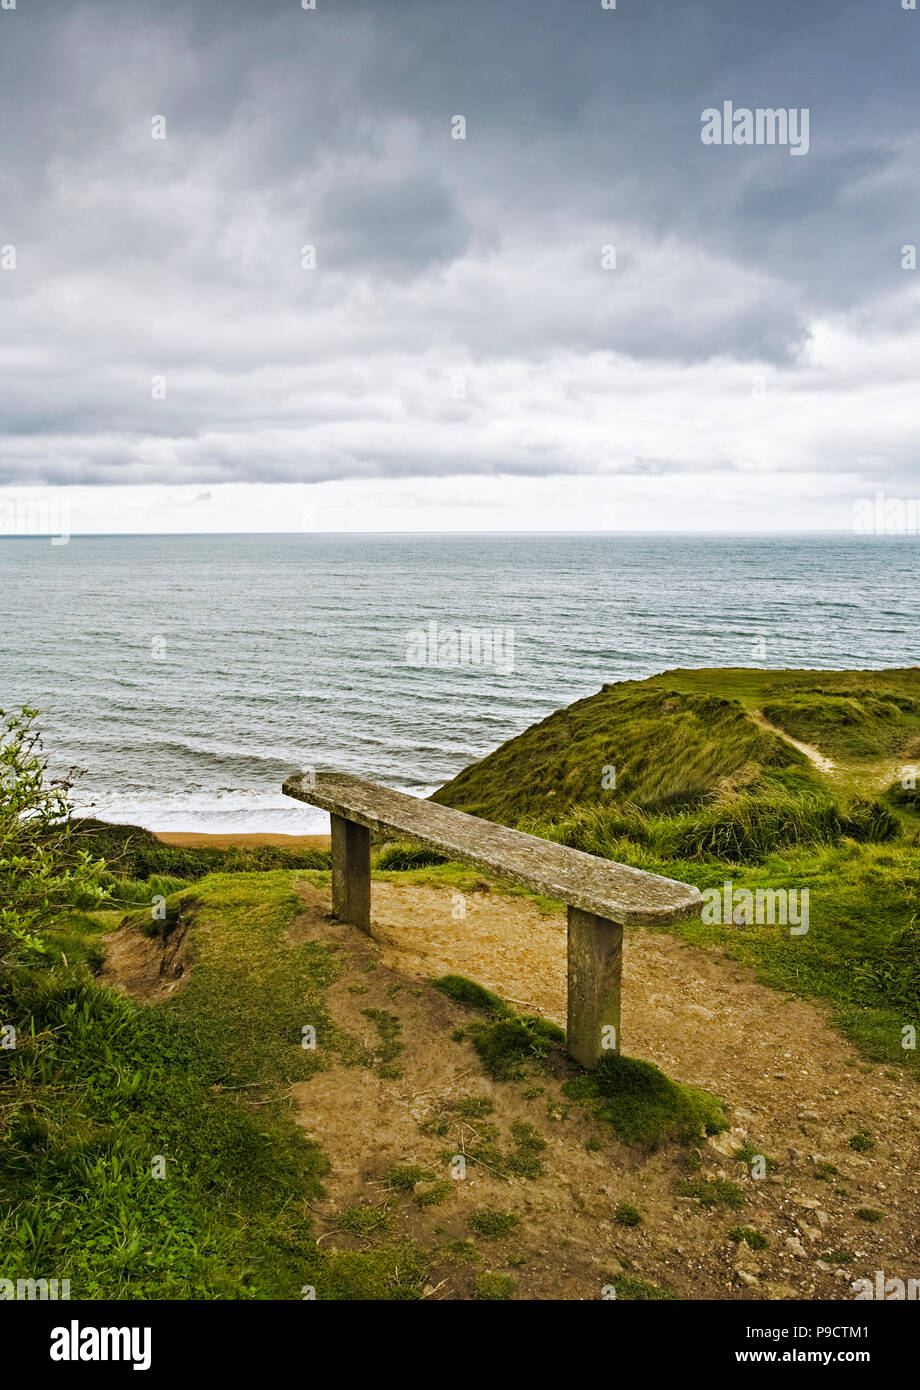 Vieux banc en bois avec vue sur la mer depuis une falaise sur un jour nuageux gris, England, UK Banque D'Images